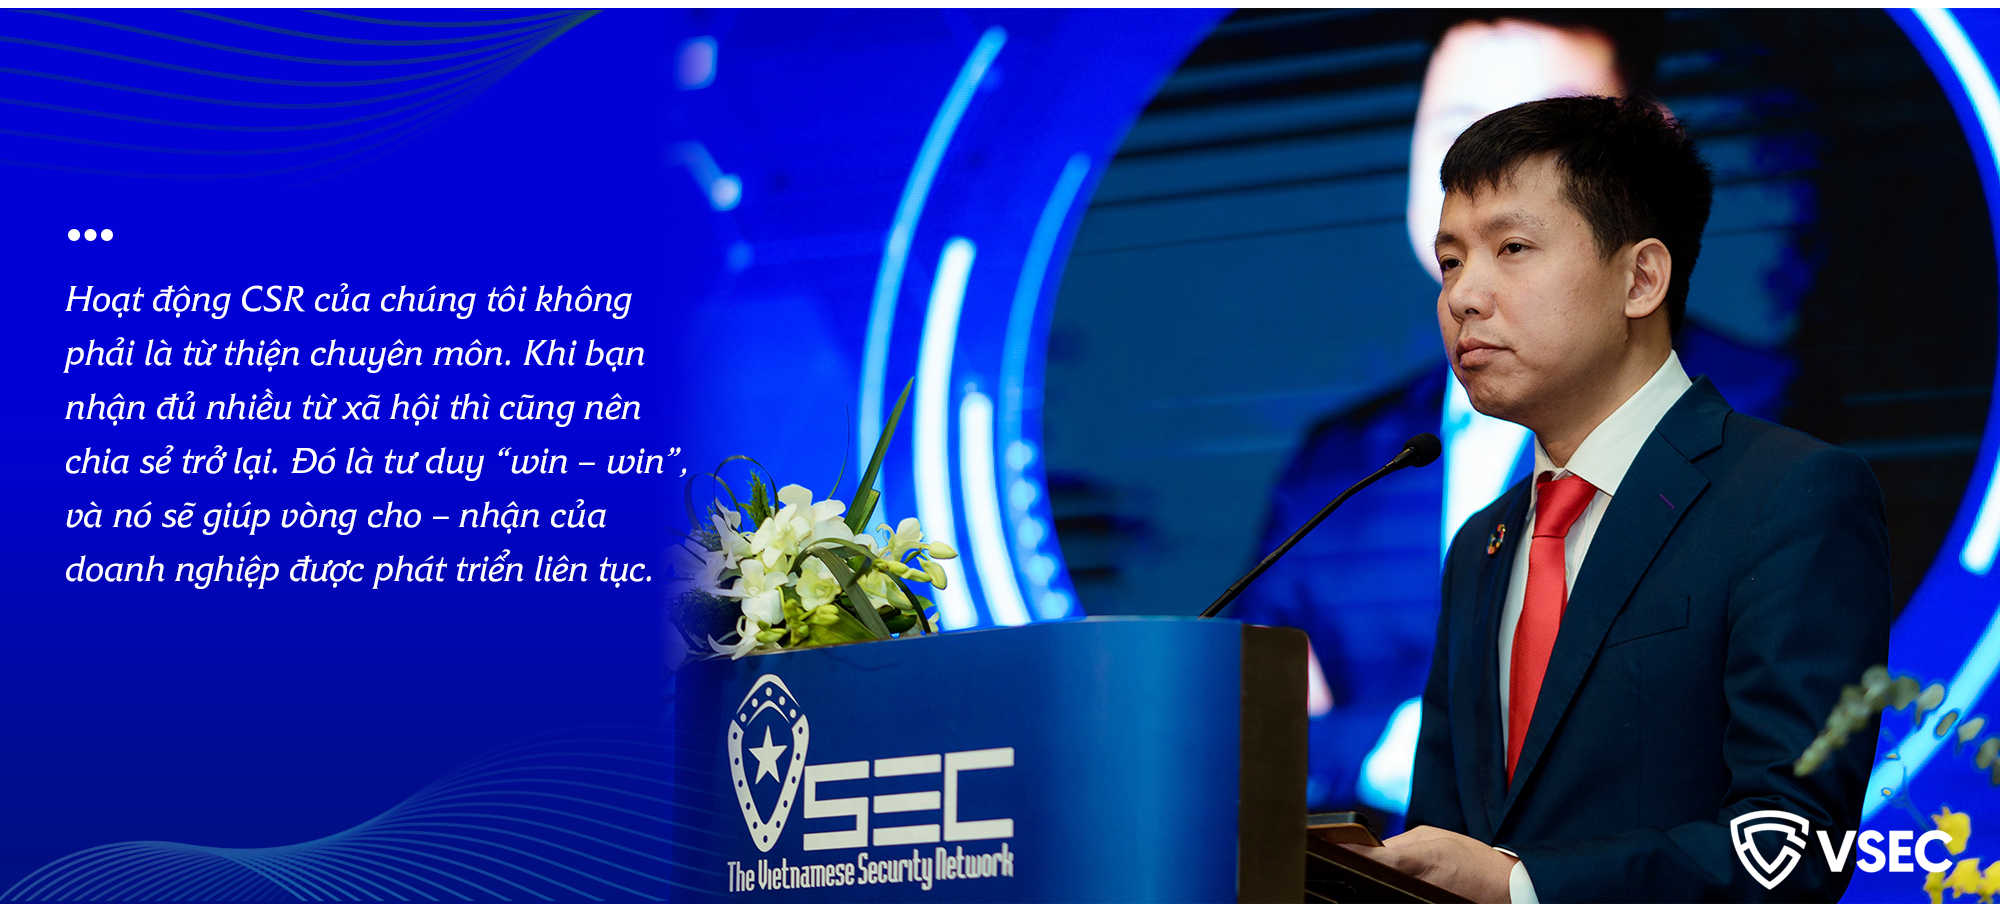 CEO VSEC Trương Đức Lượng: “Với ngành công nghệ, đúng thời điểm quyết định tất cả” - Ảnh 8.